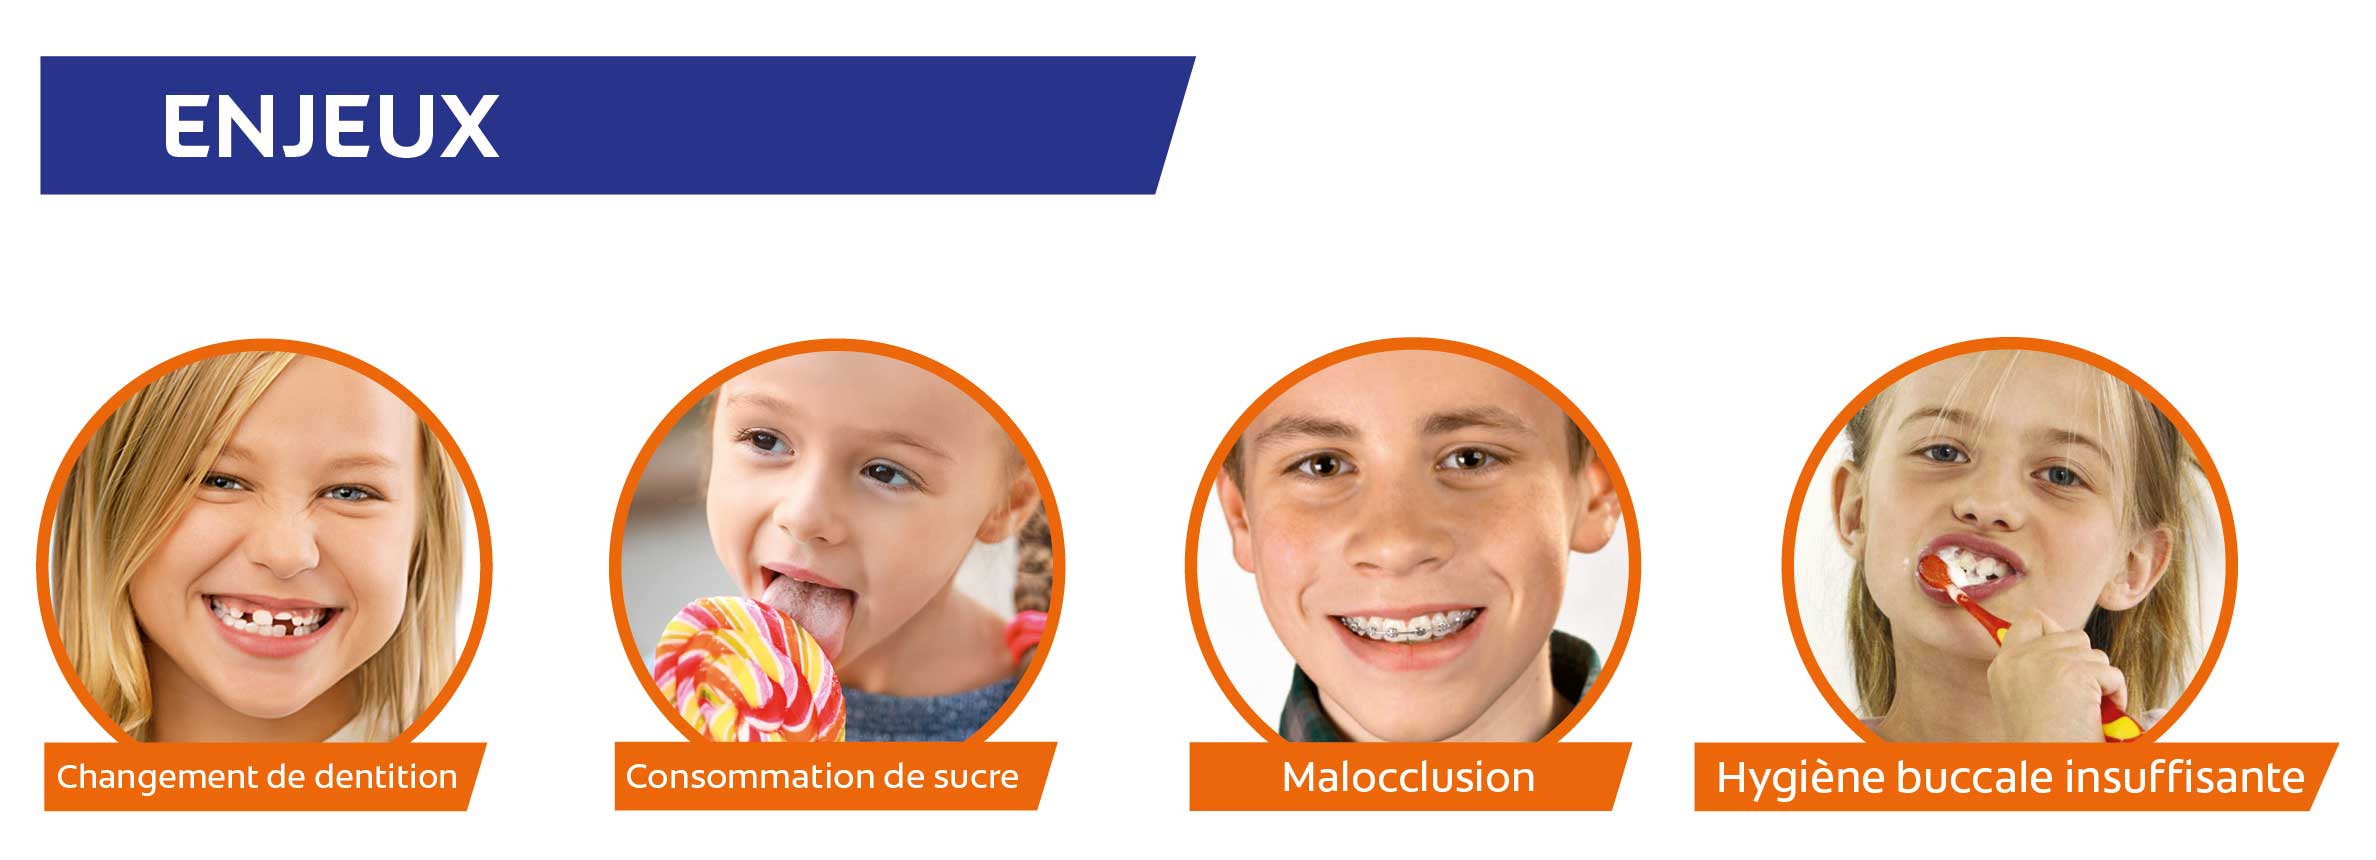 Les enjeux de la santé bucco-dentaire des enfants